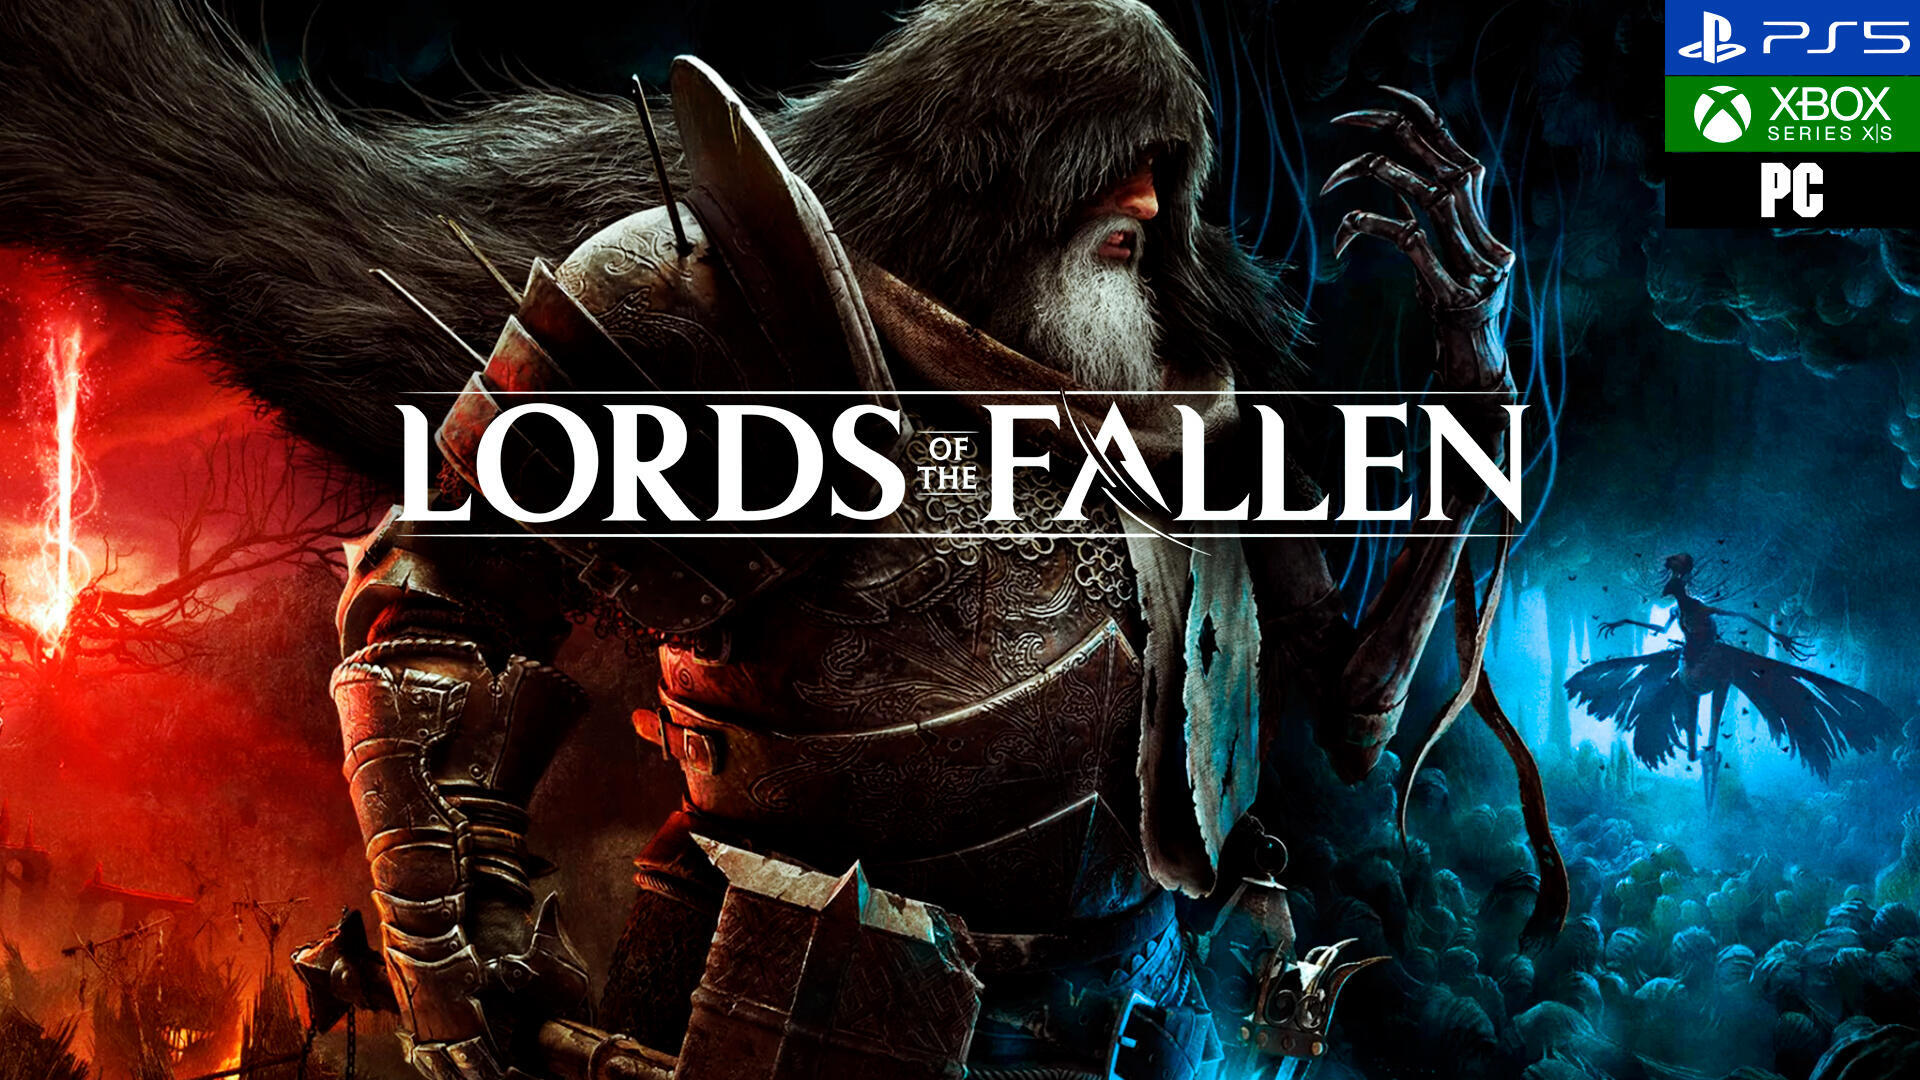 Lords of the fallen: requisitos, precio y fecha de lanzamiento